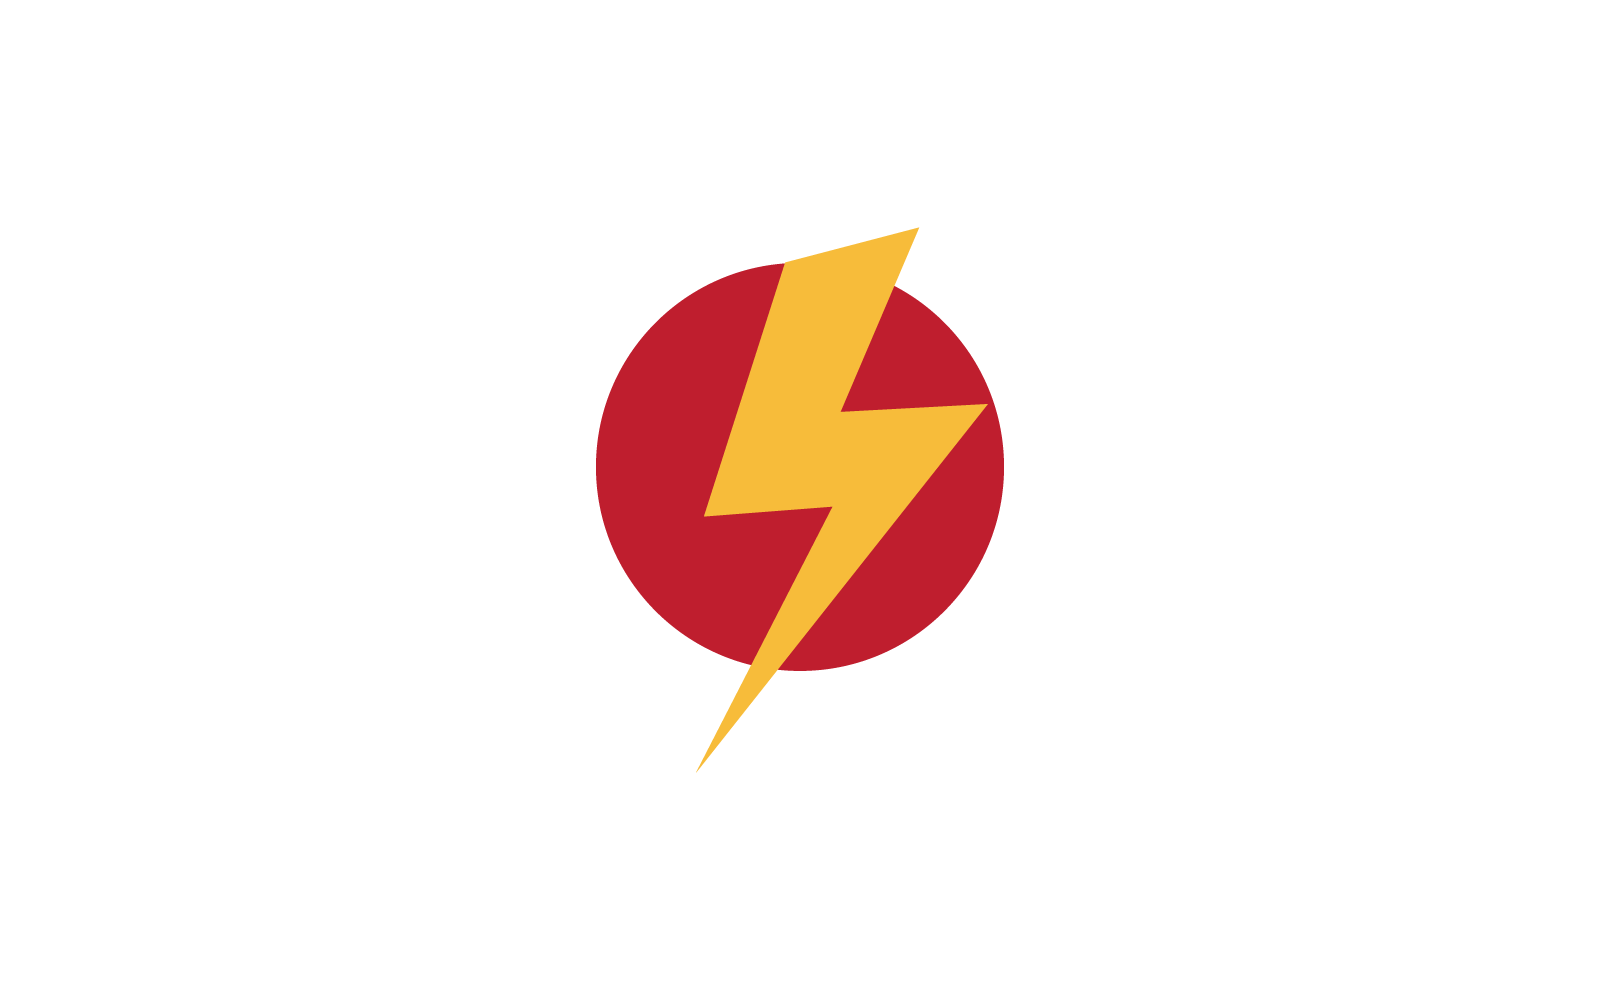 Power lightning power energy logo flat design vector template